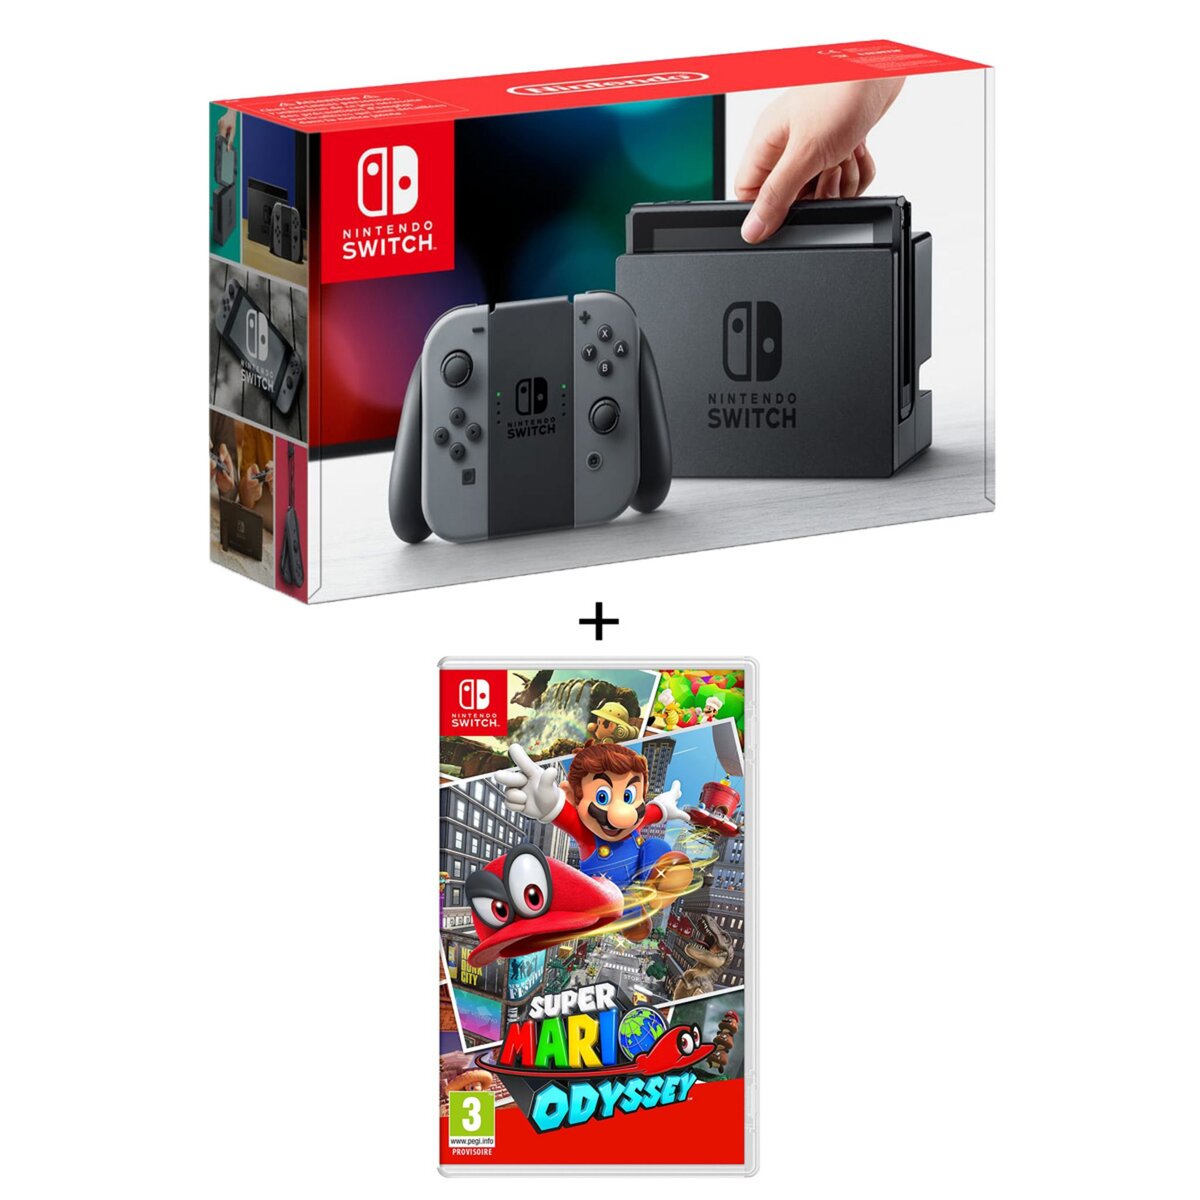 EXCLU WEB Console Nintendo switch 2 Joy-Con Grise + Super Mario Odyssey